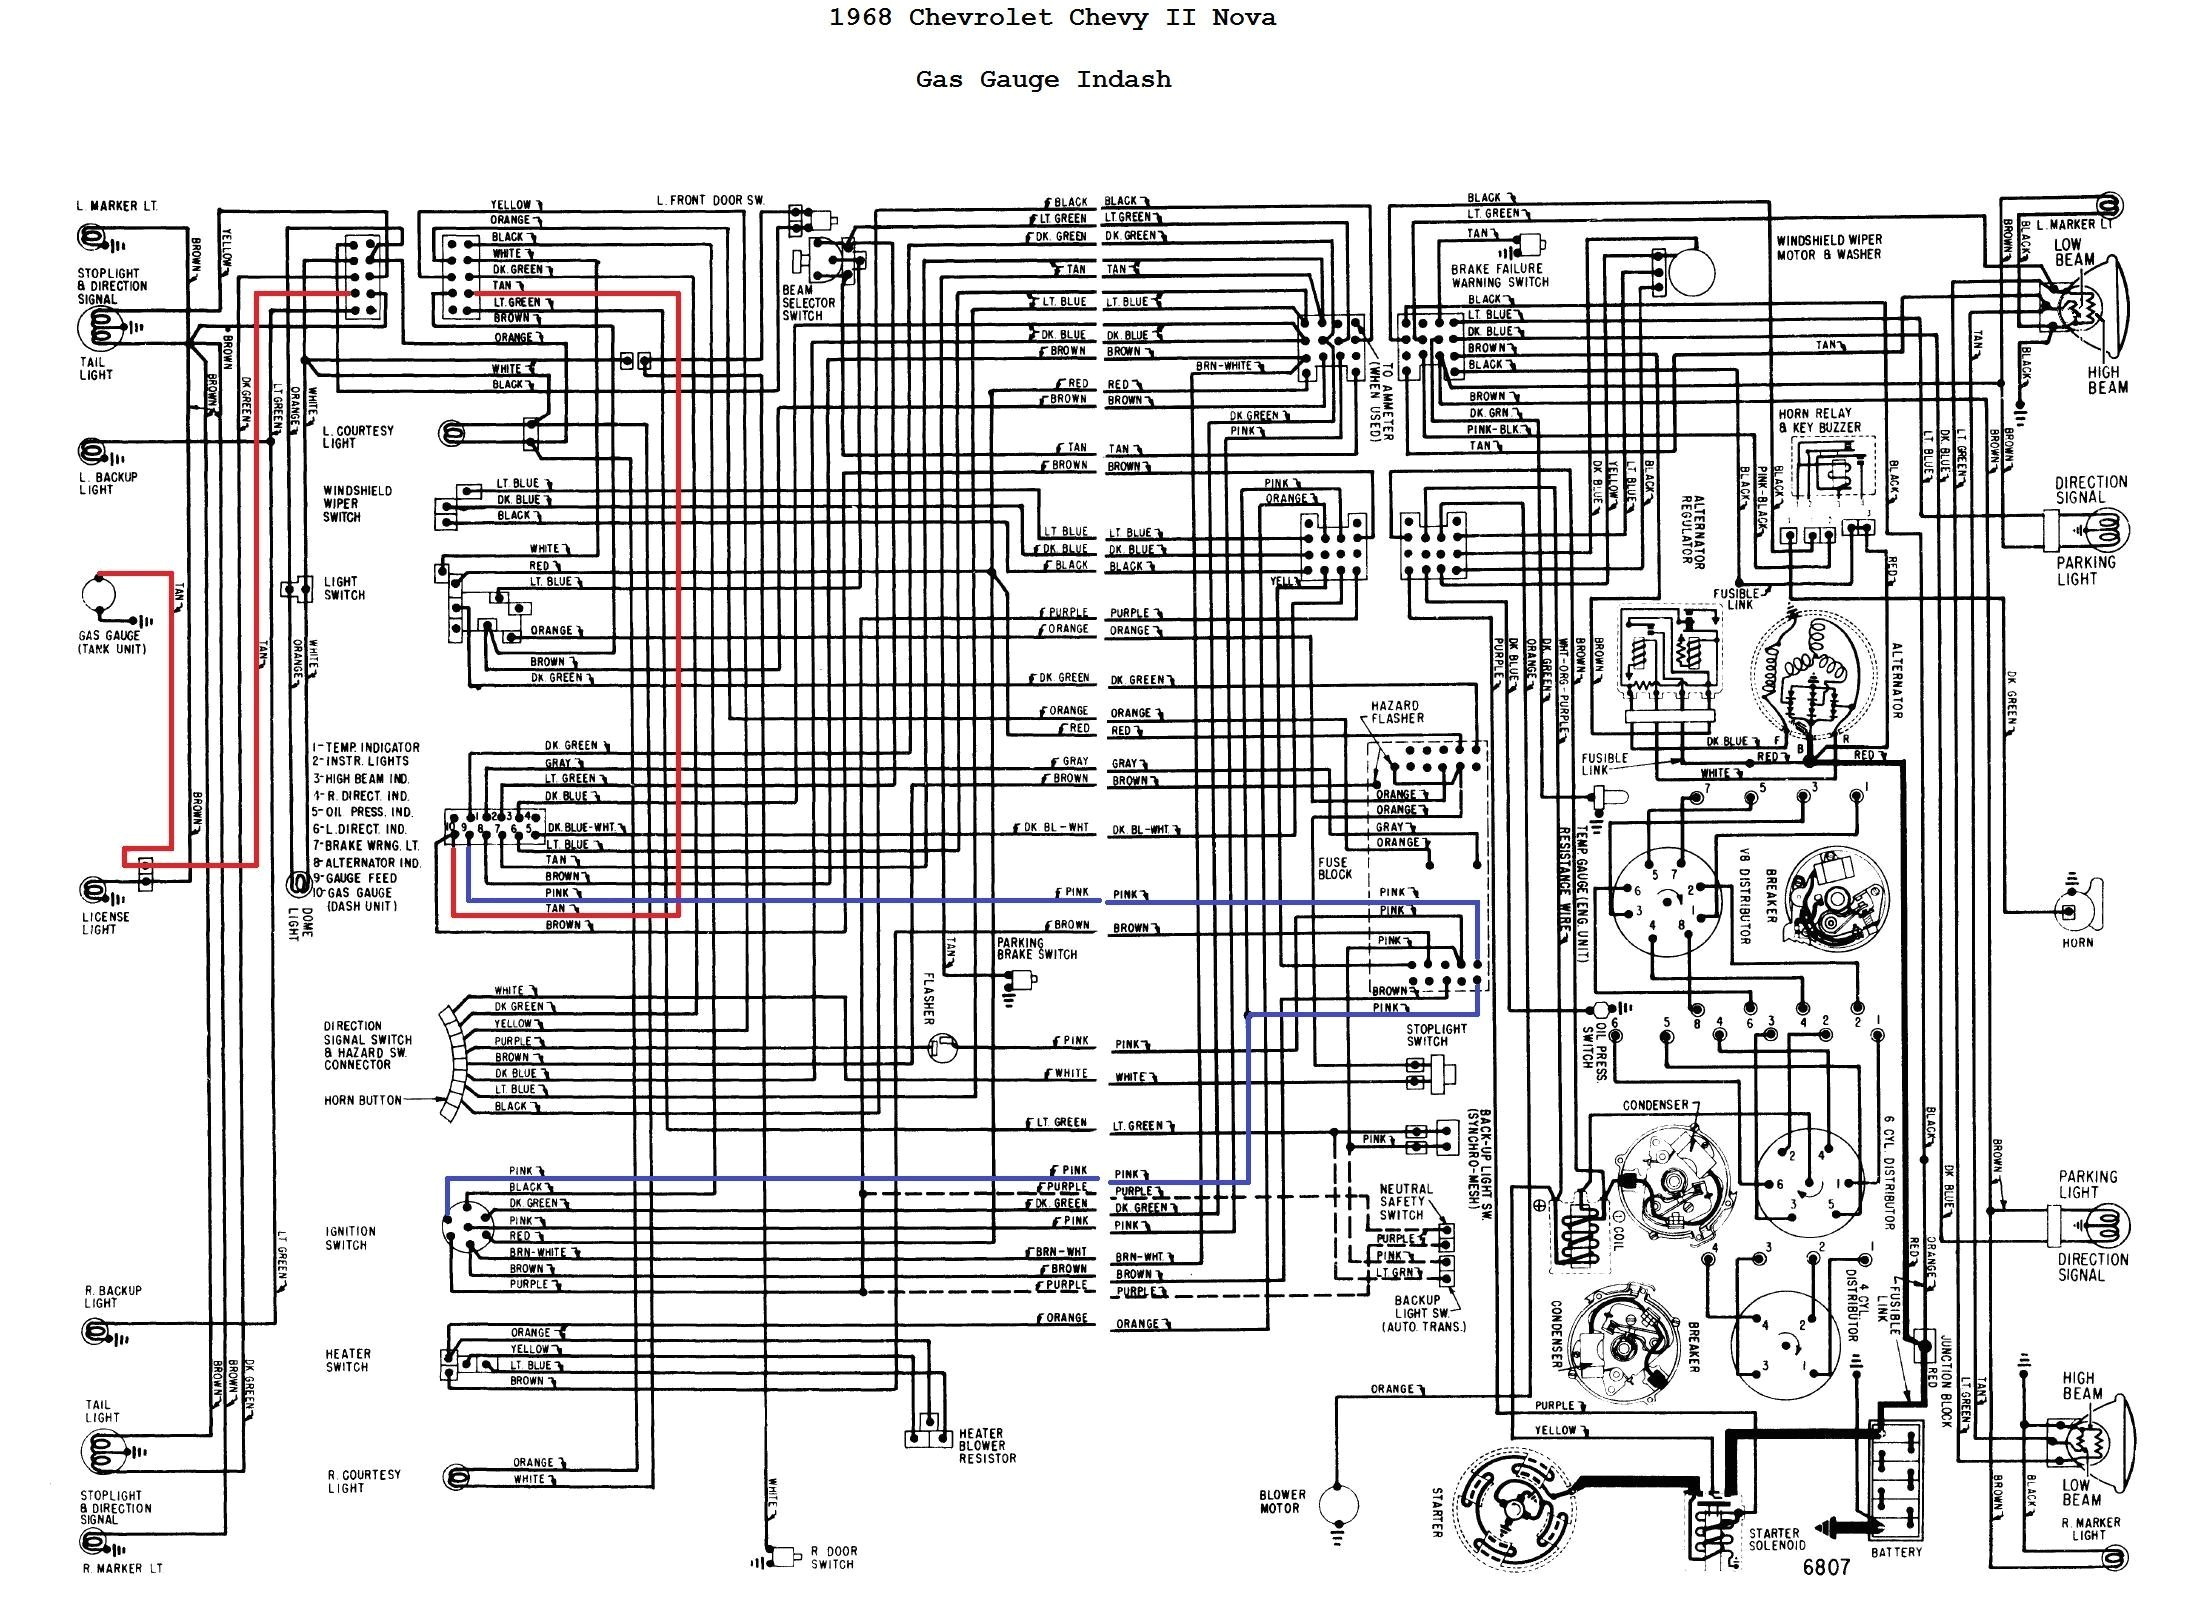 68 impala convertible wiring diagram wiring diagram 1967 impala fuel gauge wiring diagram